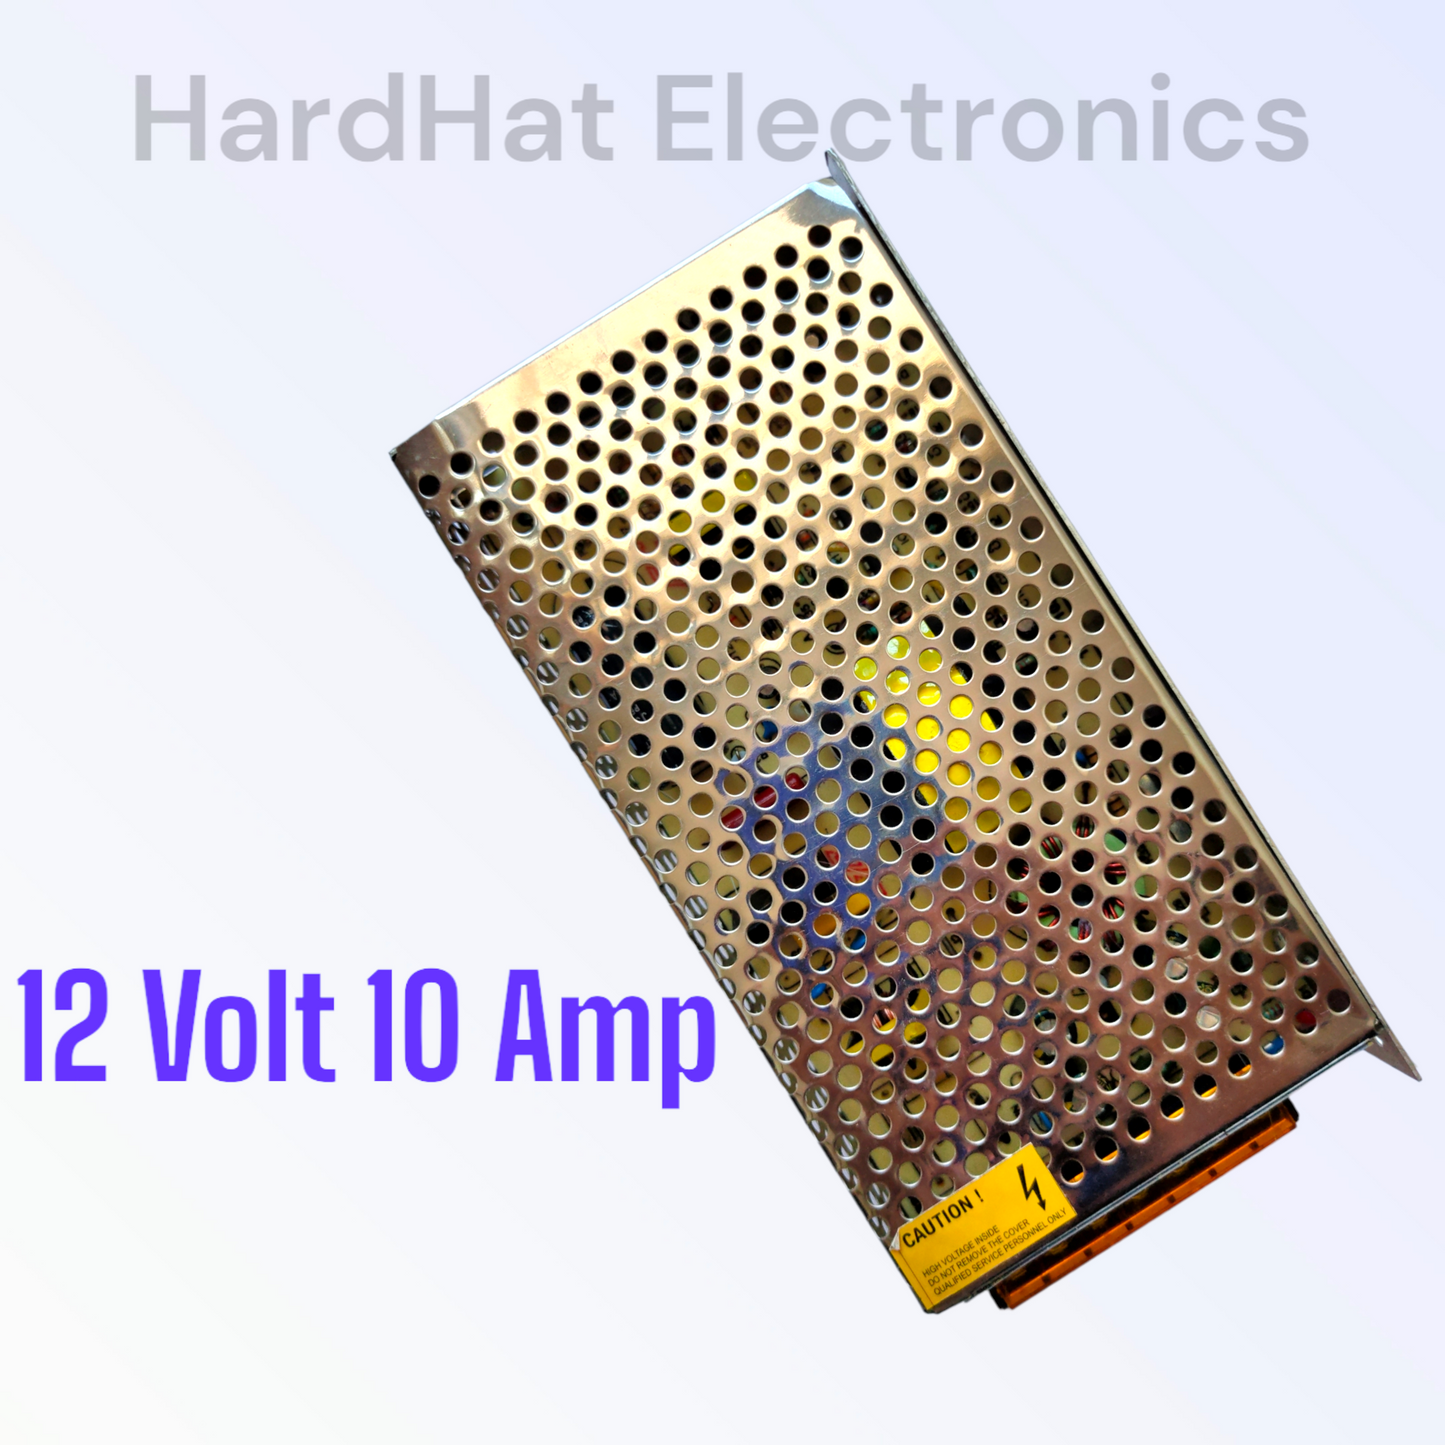 SMPS 12Volt 10 Amp